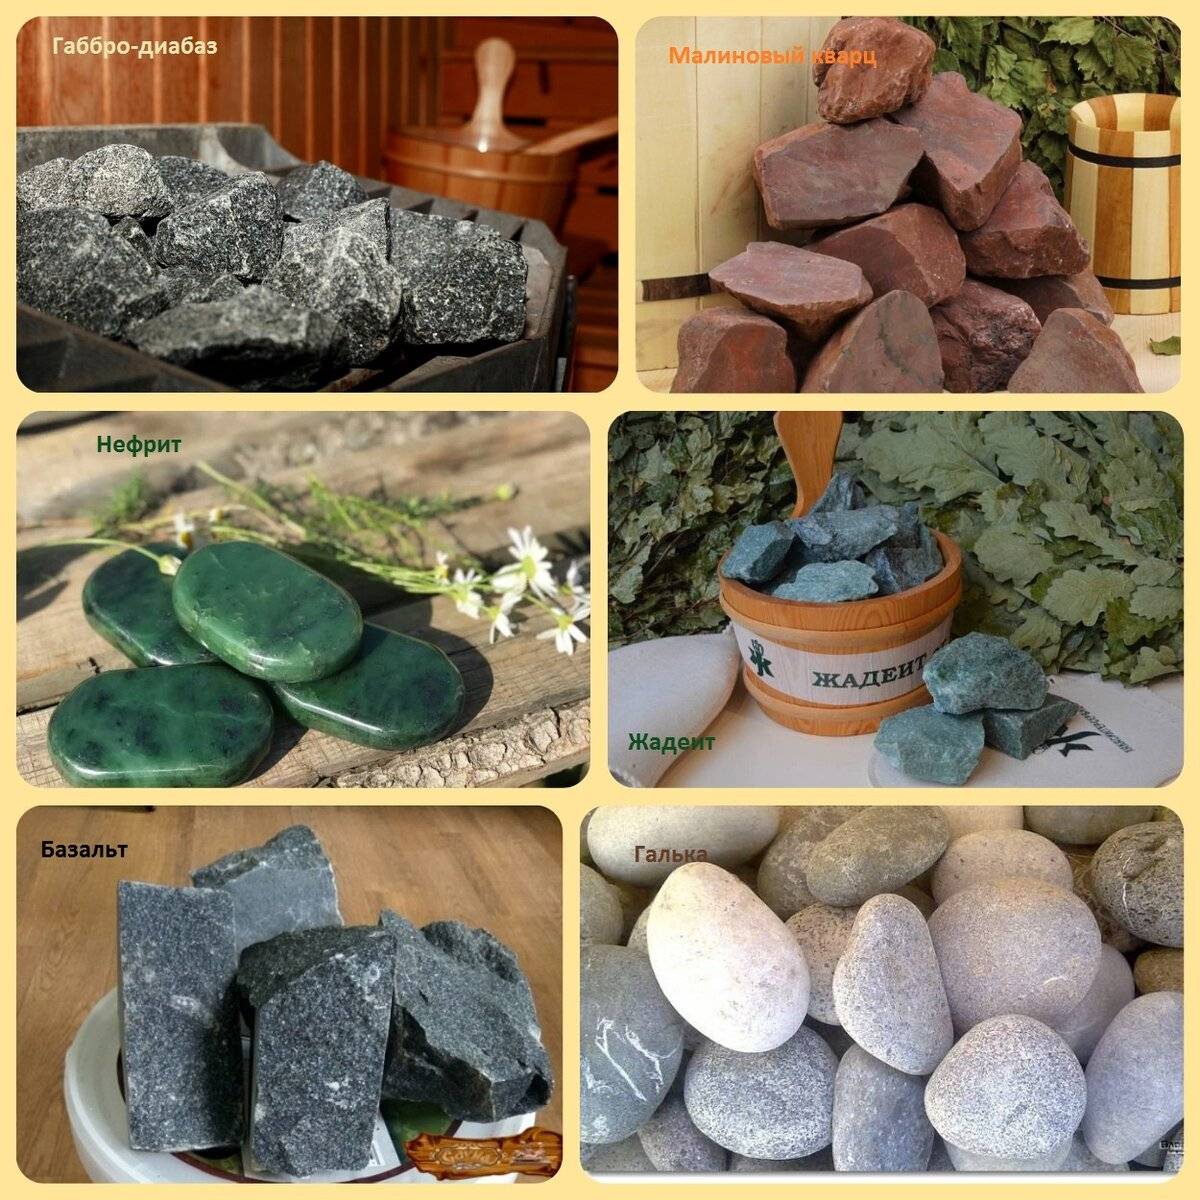 Камни для бани: жадеит, его свойства, в том числе лечебные, применение в бане - плитка, наполнитель для каменки.